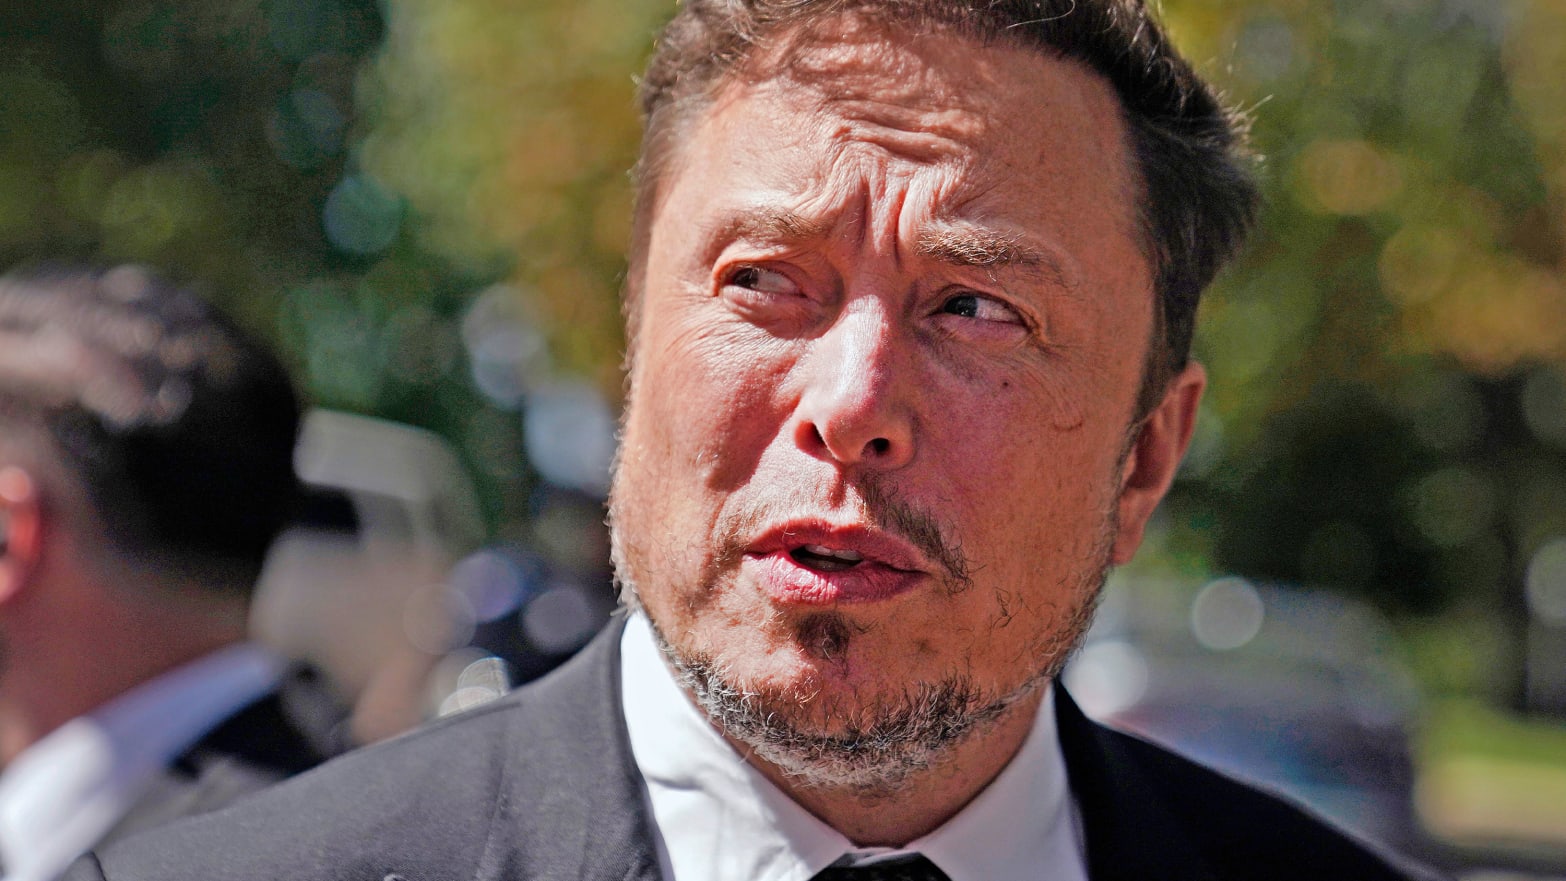 A close up of Elon Musk